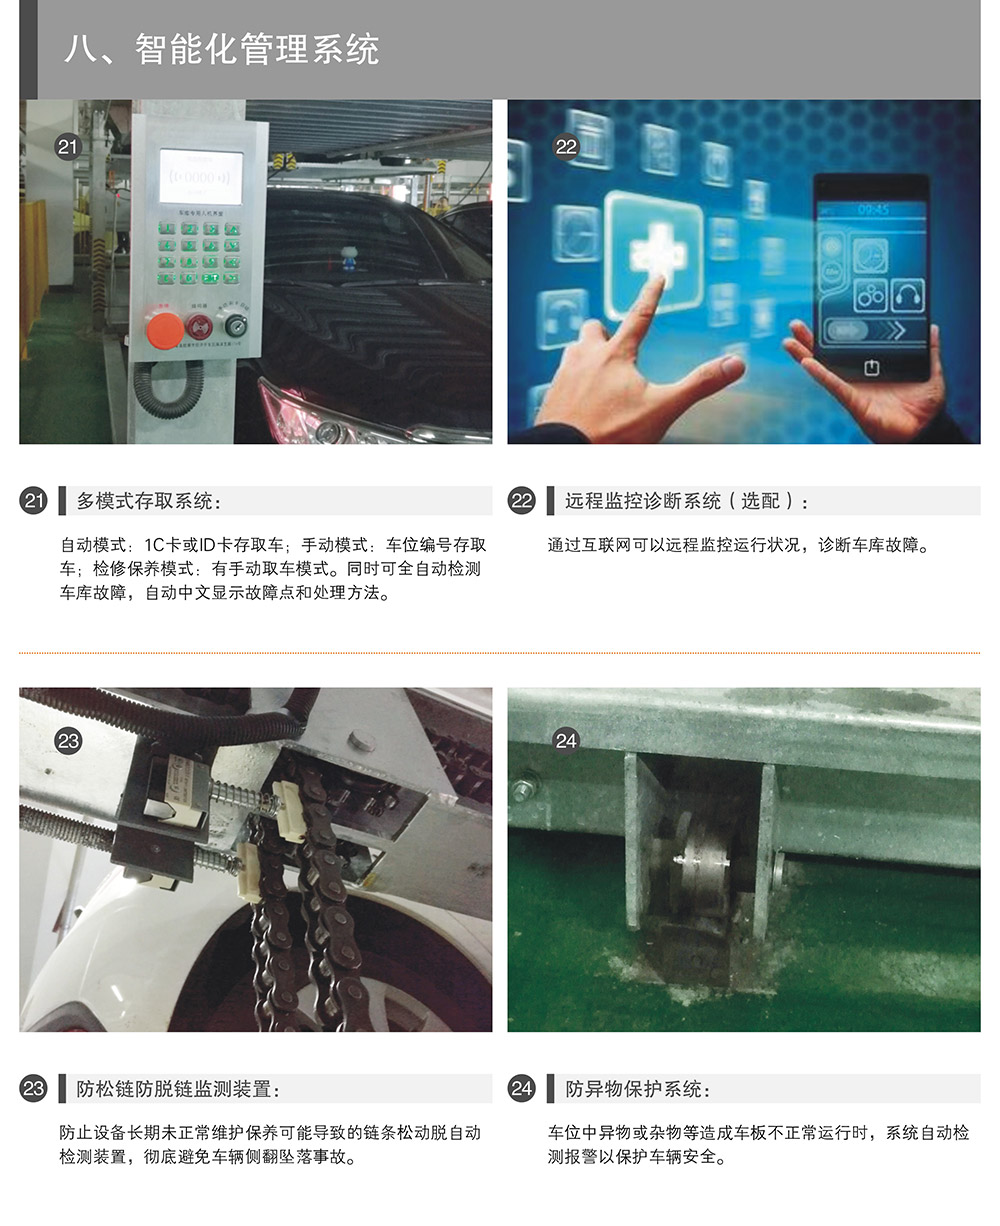 四川成都PSH升降横移停车设备智能化管理系统.jpg